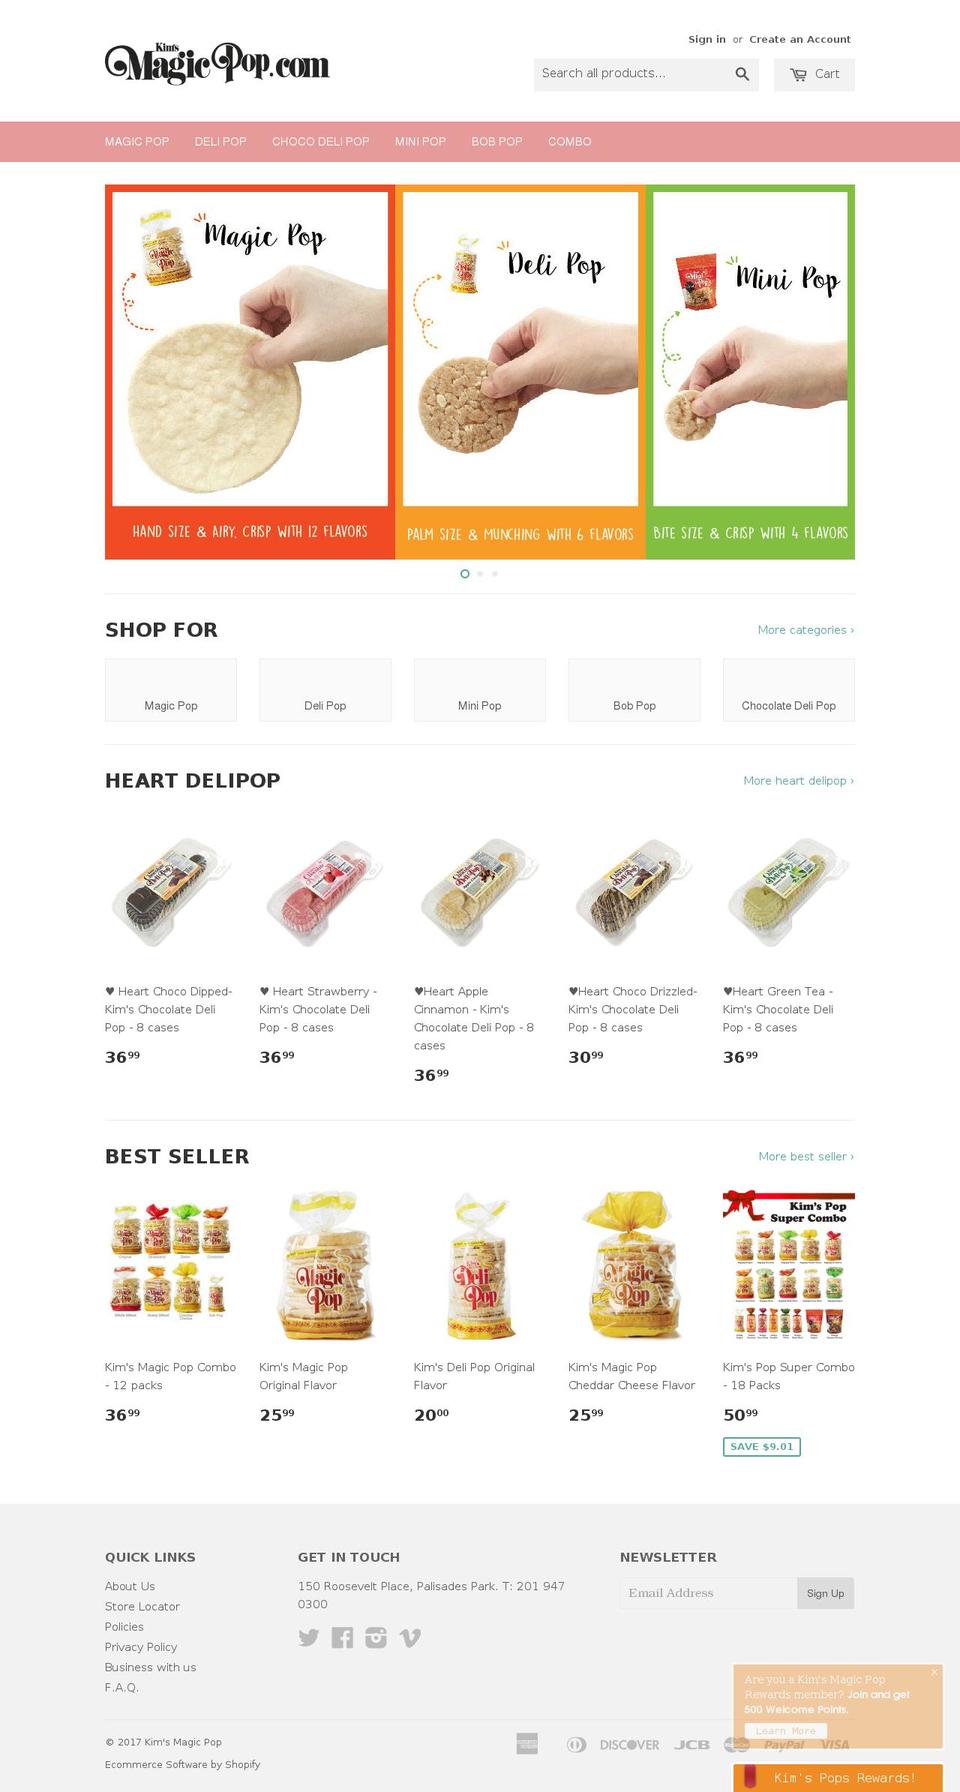 kimsmagicpop.com shopify website screenshot